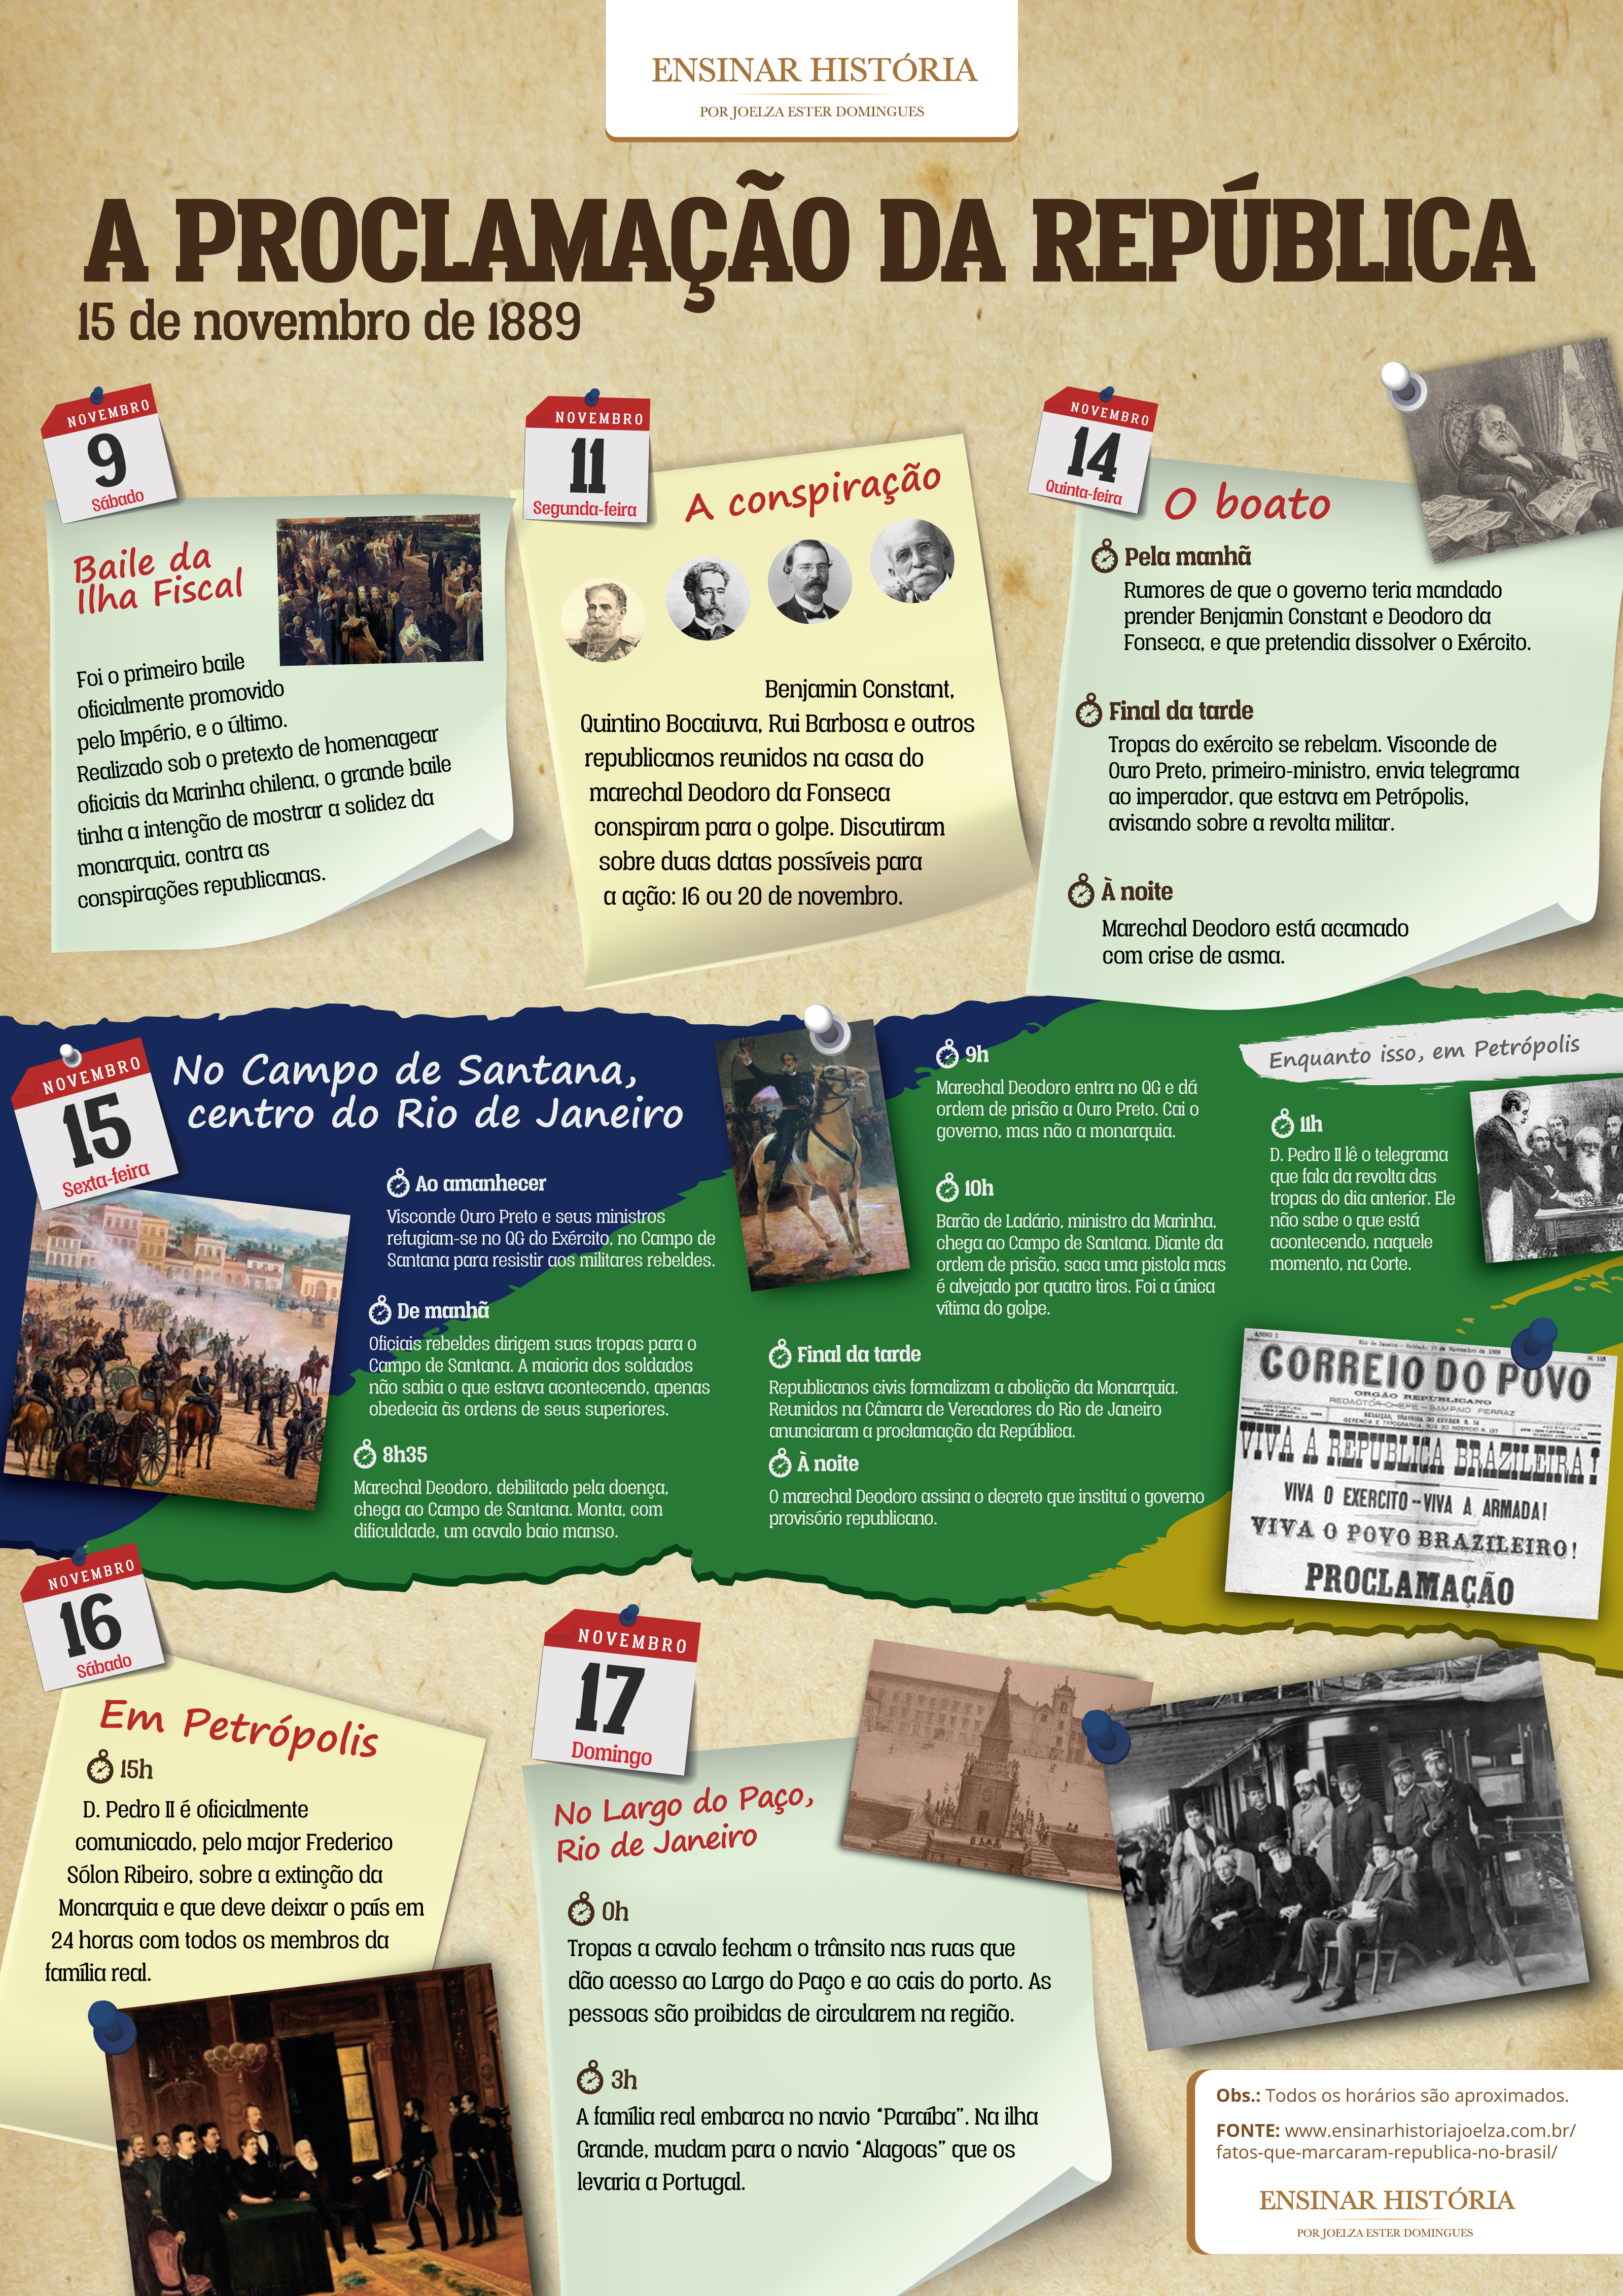 16 fatos que marcaram a implantação da República no Brasil